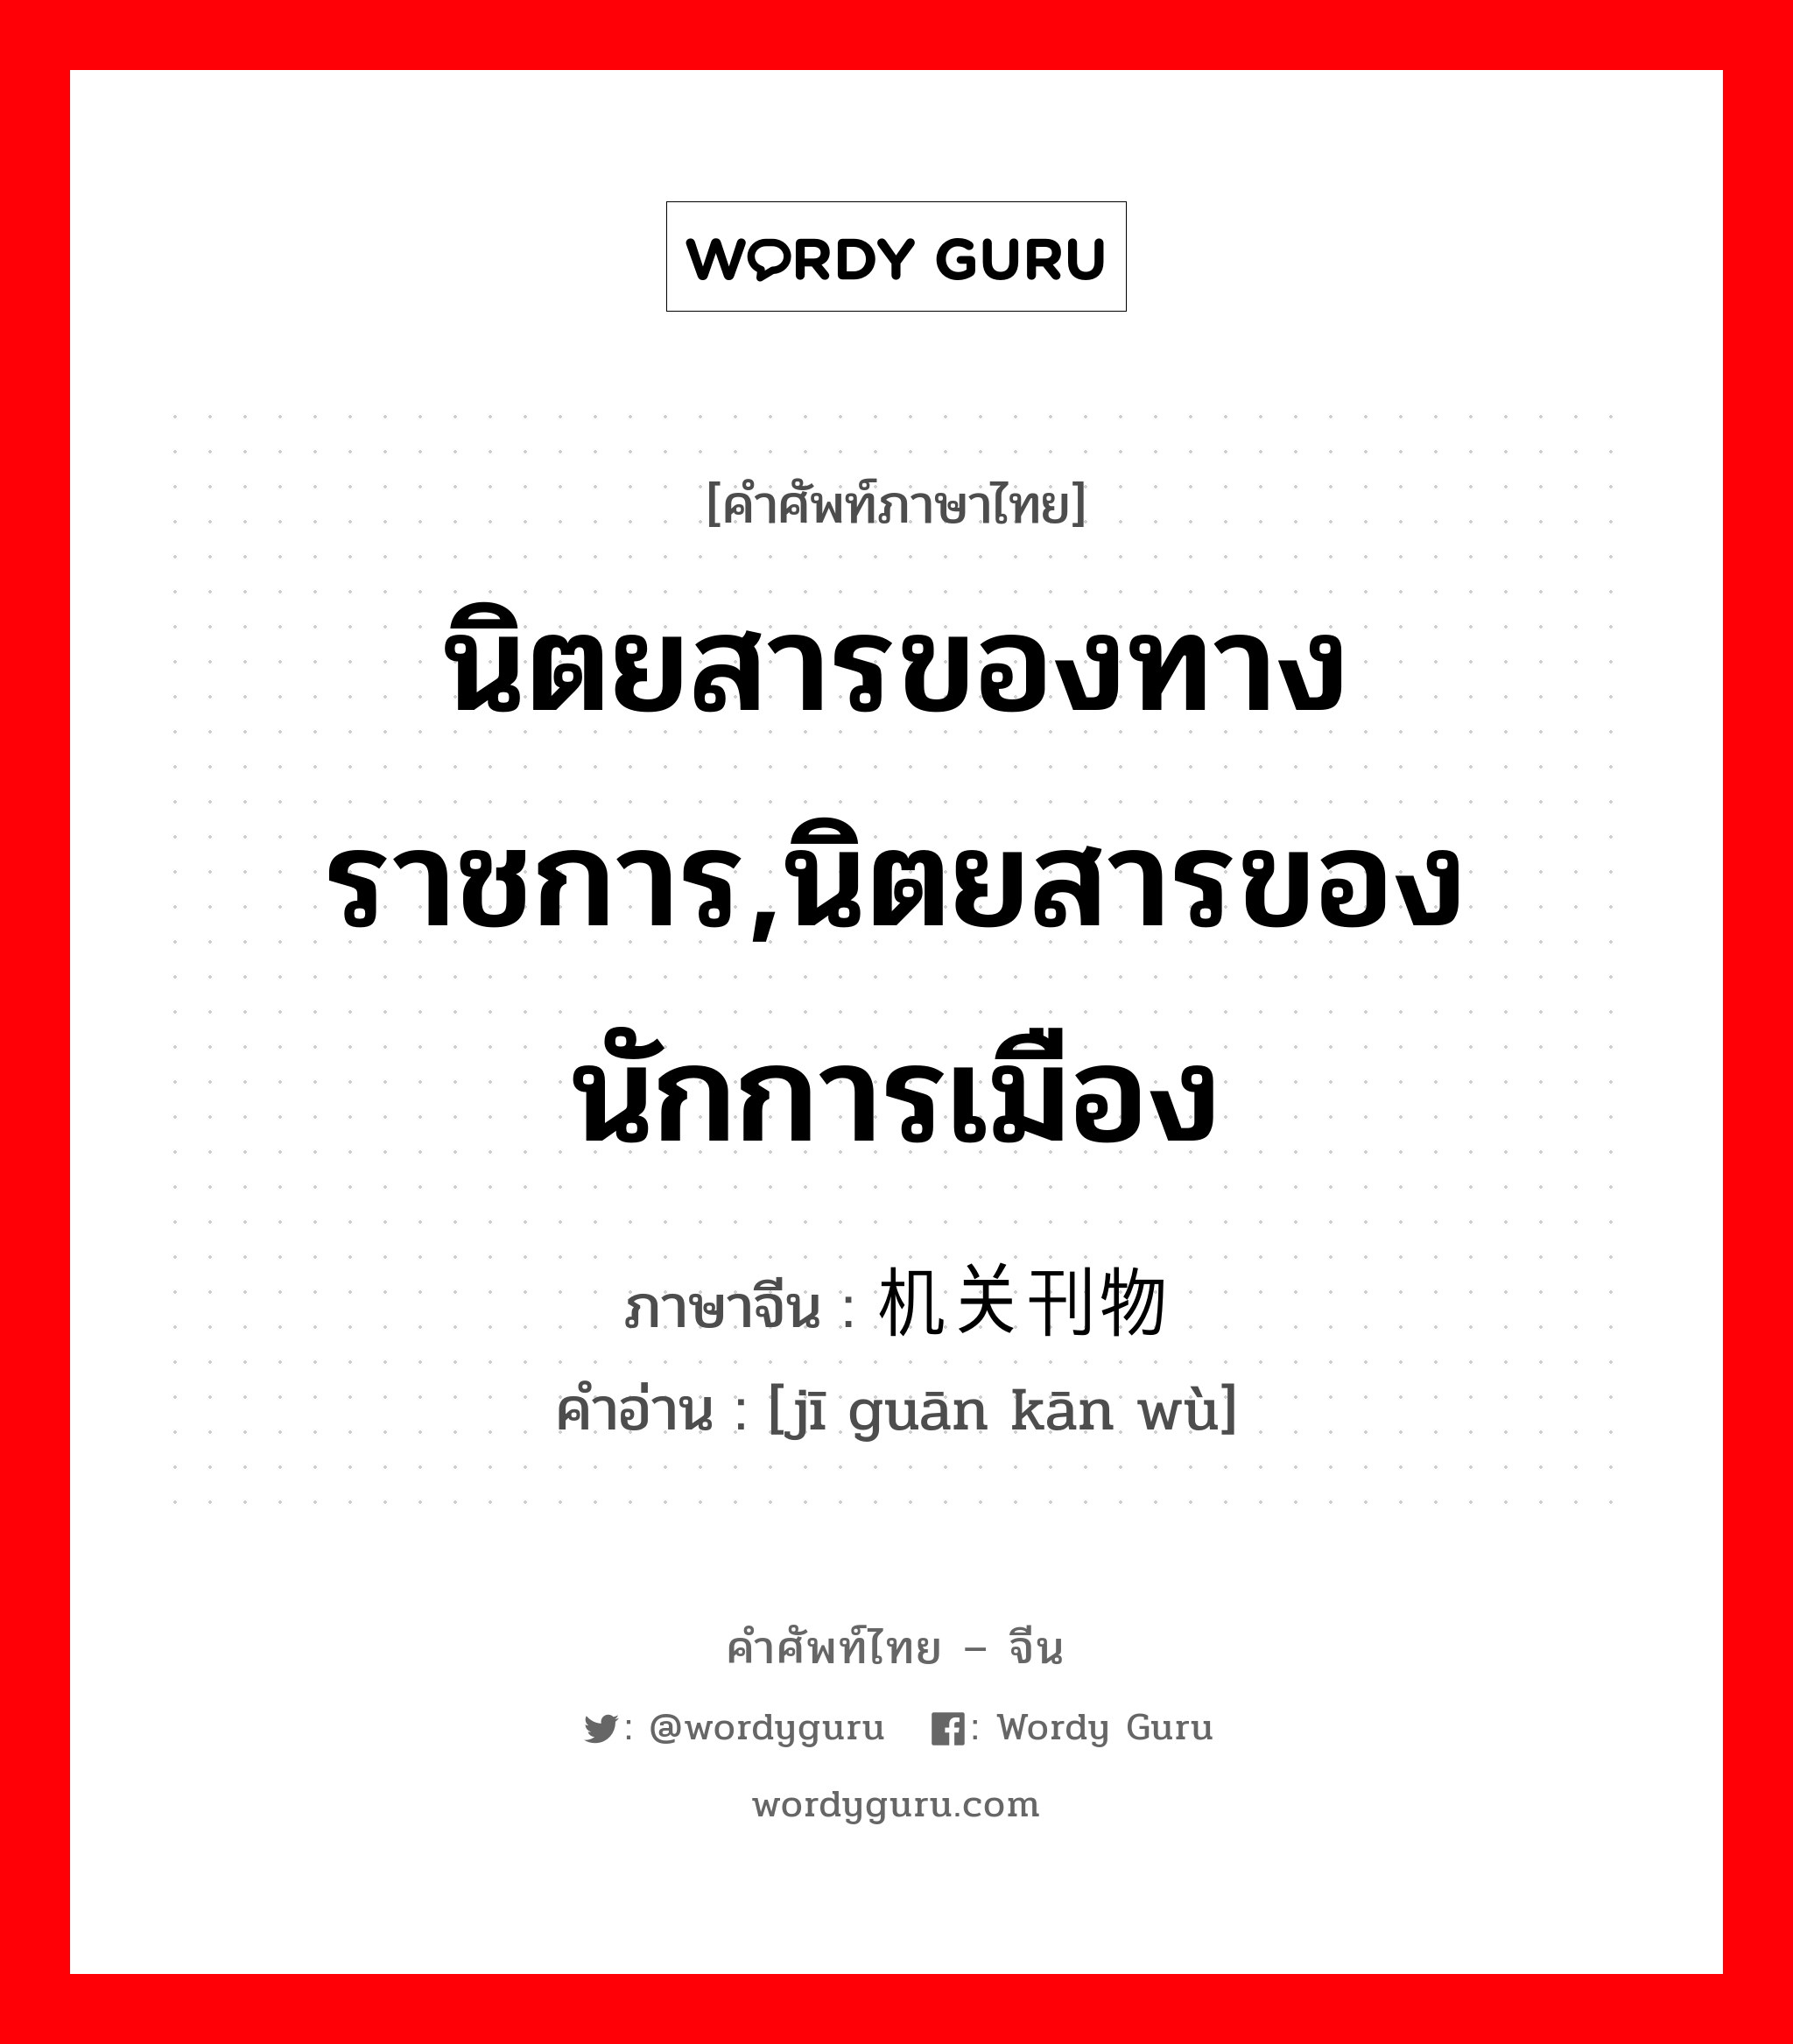 นิตยสารของทางราชการ,นิตยสารของนักการเมือง ภาษาจีนคืออะไร, คำศัพท์ภาษาไทย - จีน นิตยสารของทางราชการ,นิตยสารของนักการเมือง ภาษาจีน 机关刊物 คำอ่าน [jī guān kān wù]